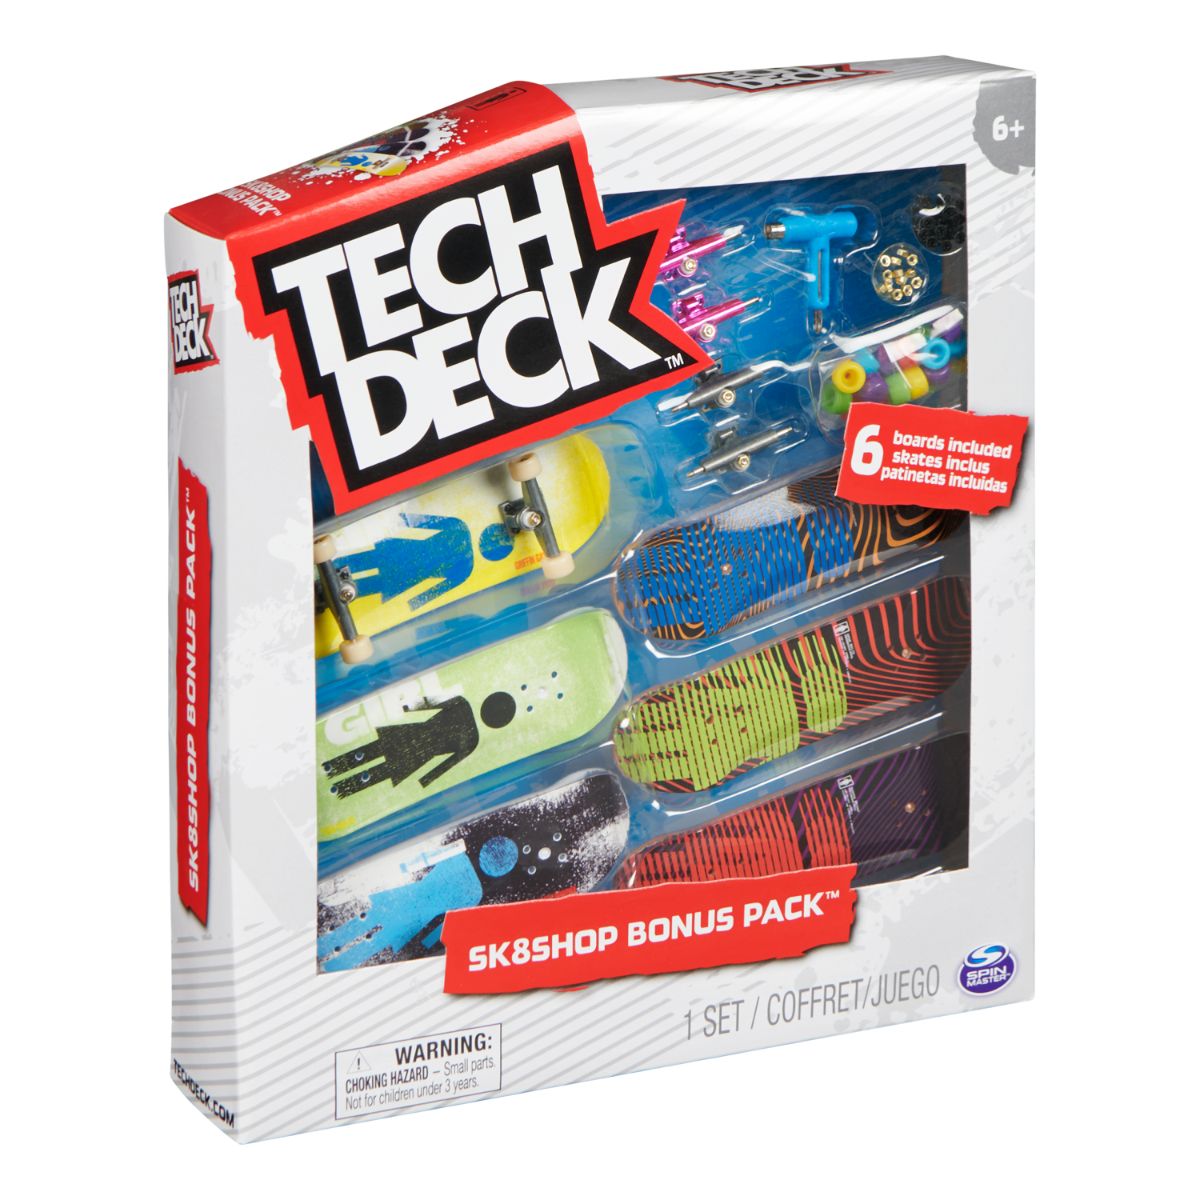 Set 6 mini placi skateboard, Tech Deck, Bonus Pack 20136705 20136705